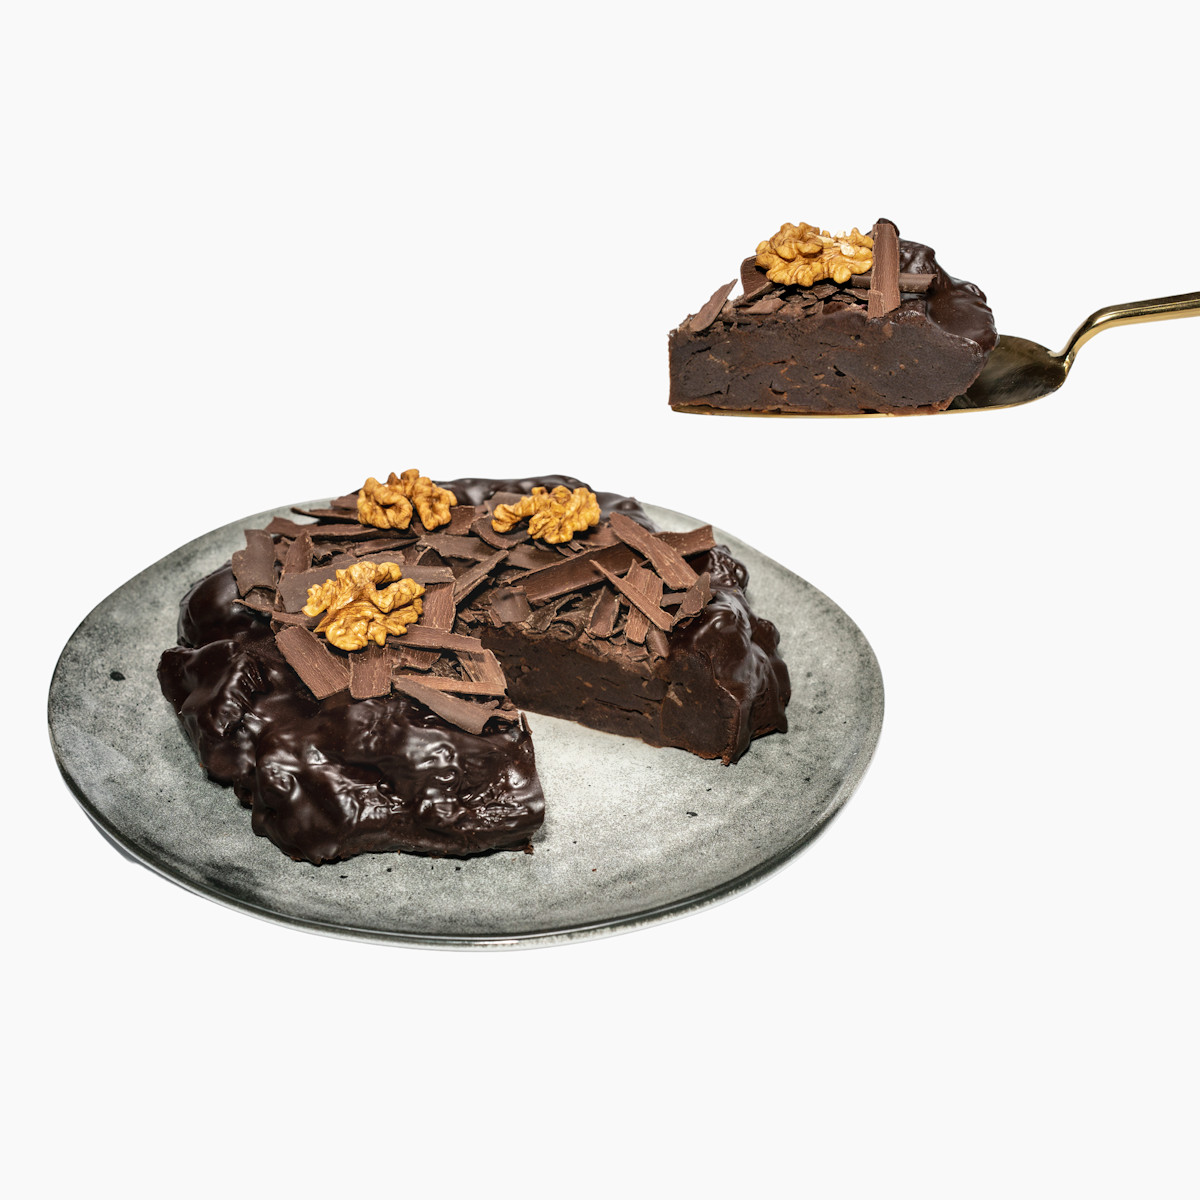 Čokodort Vlašák na stříbrném talíři s kousky vlašských ořechů, a velkými čokoládovými hoblinami